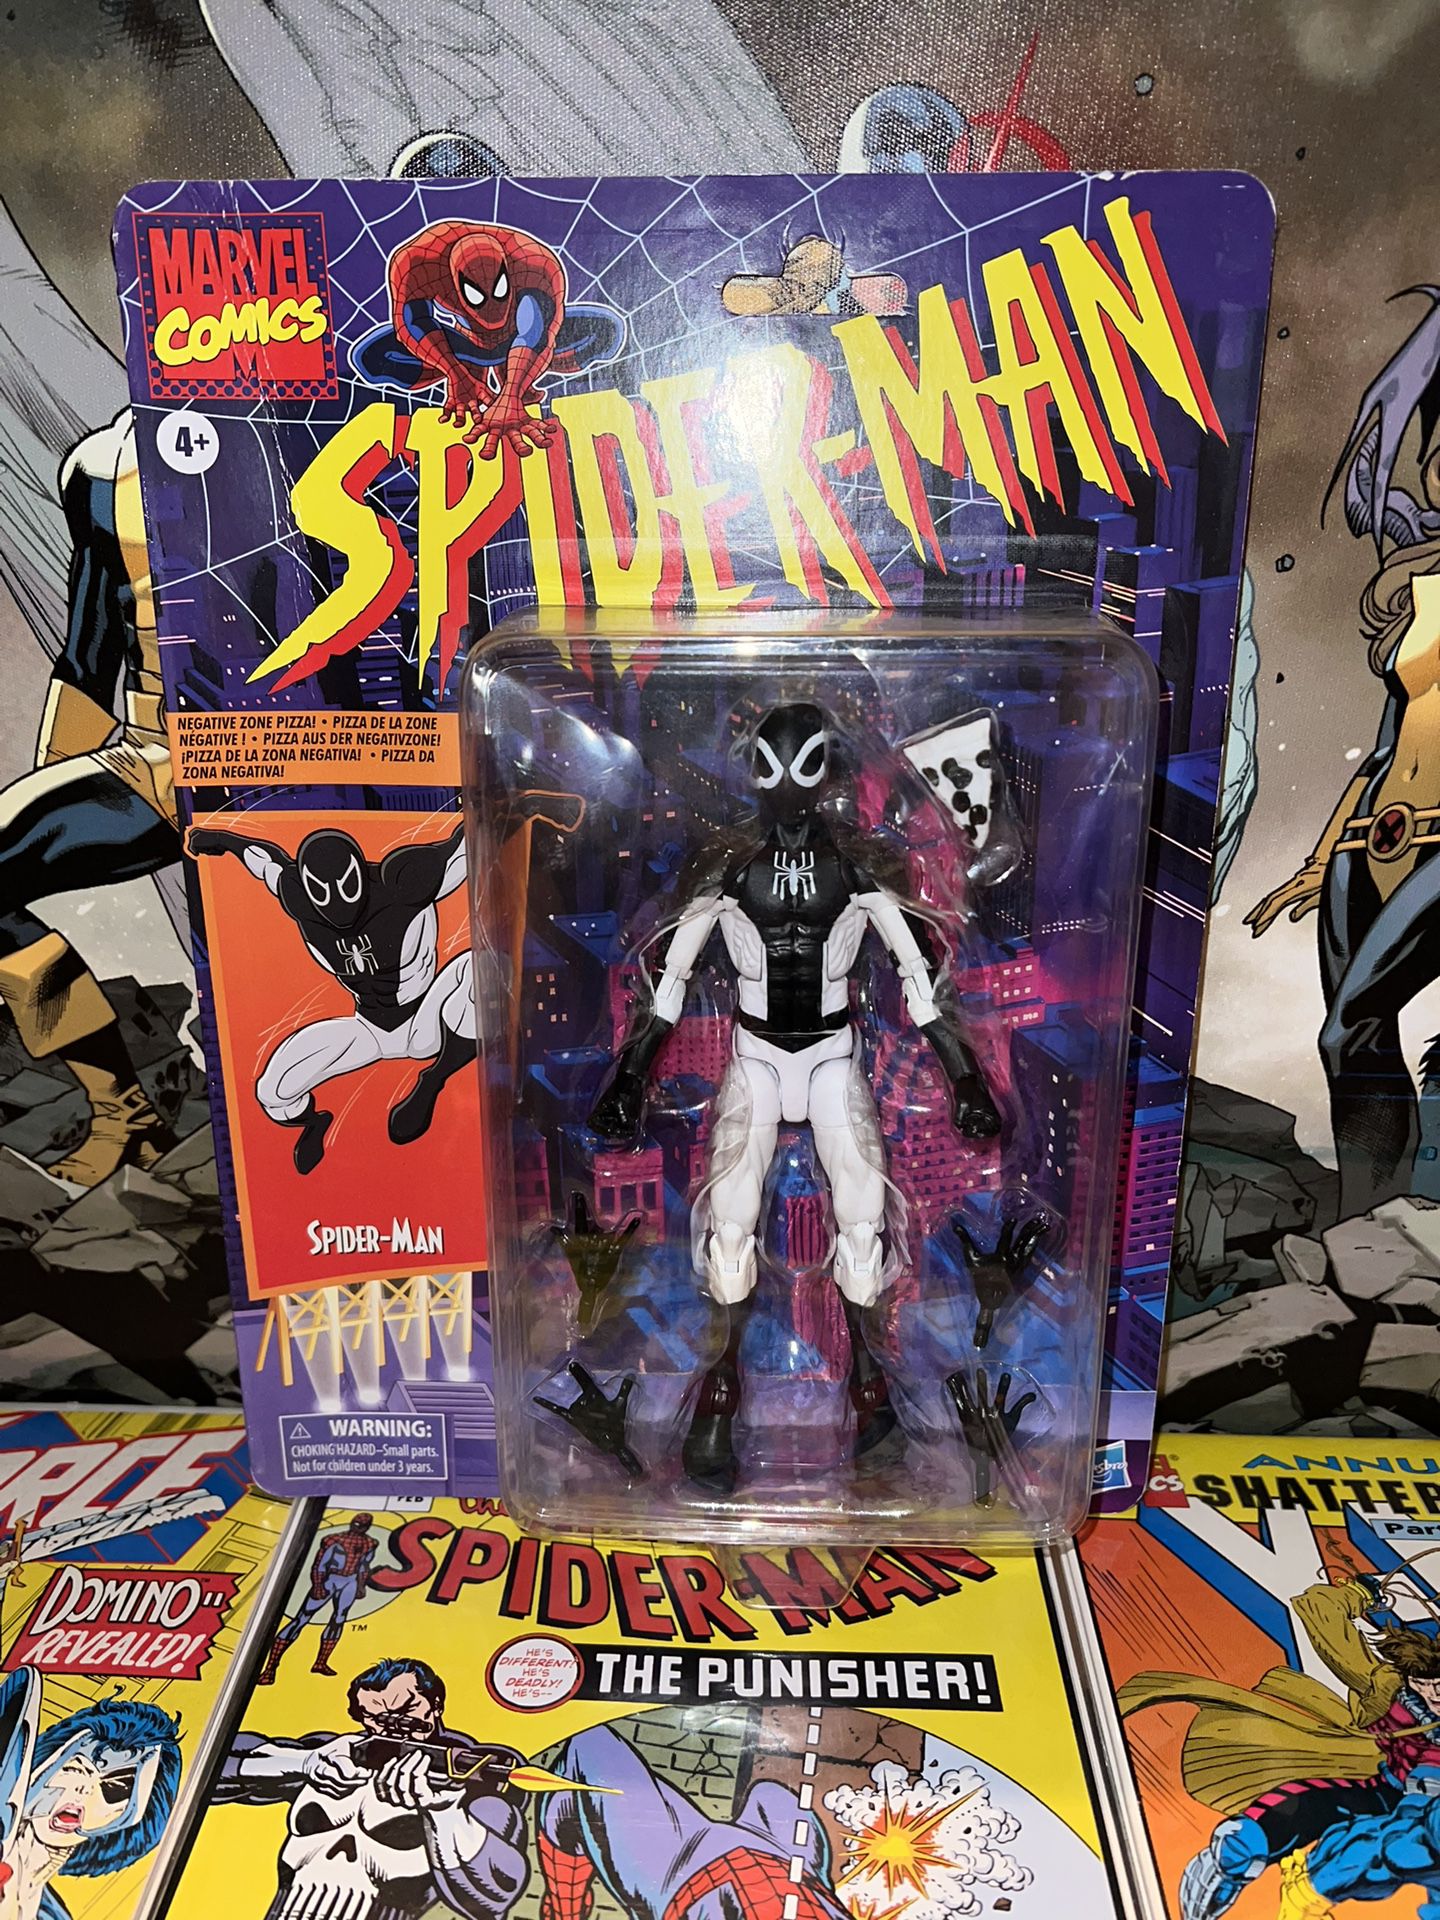 Marvel Legends Spider-Man Negative Suit 